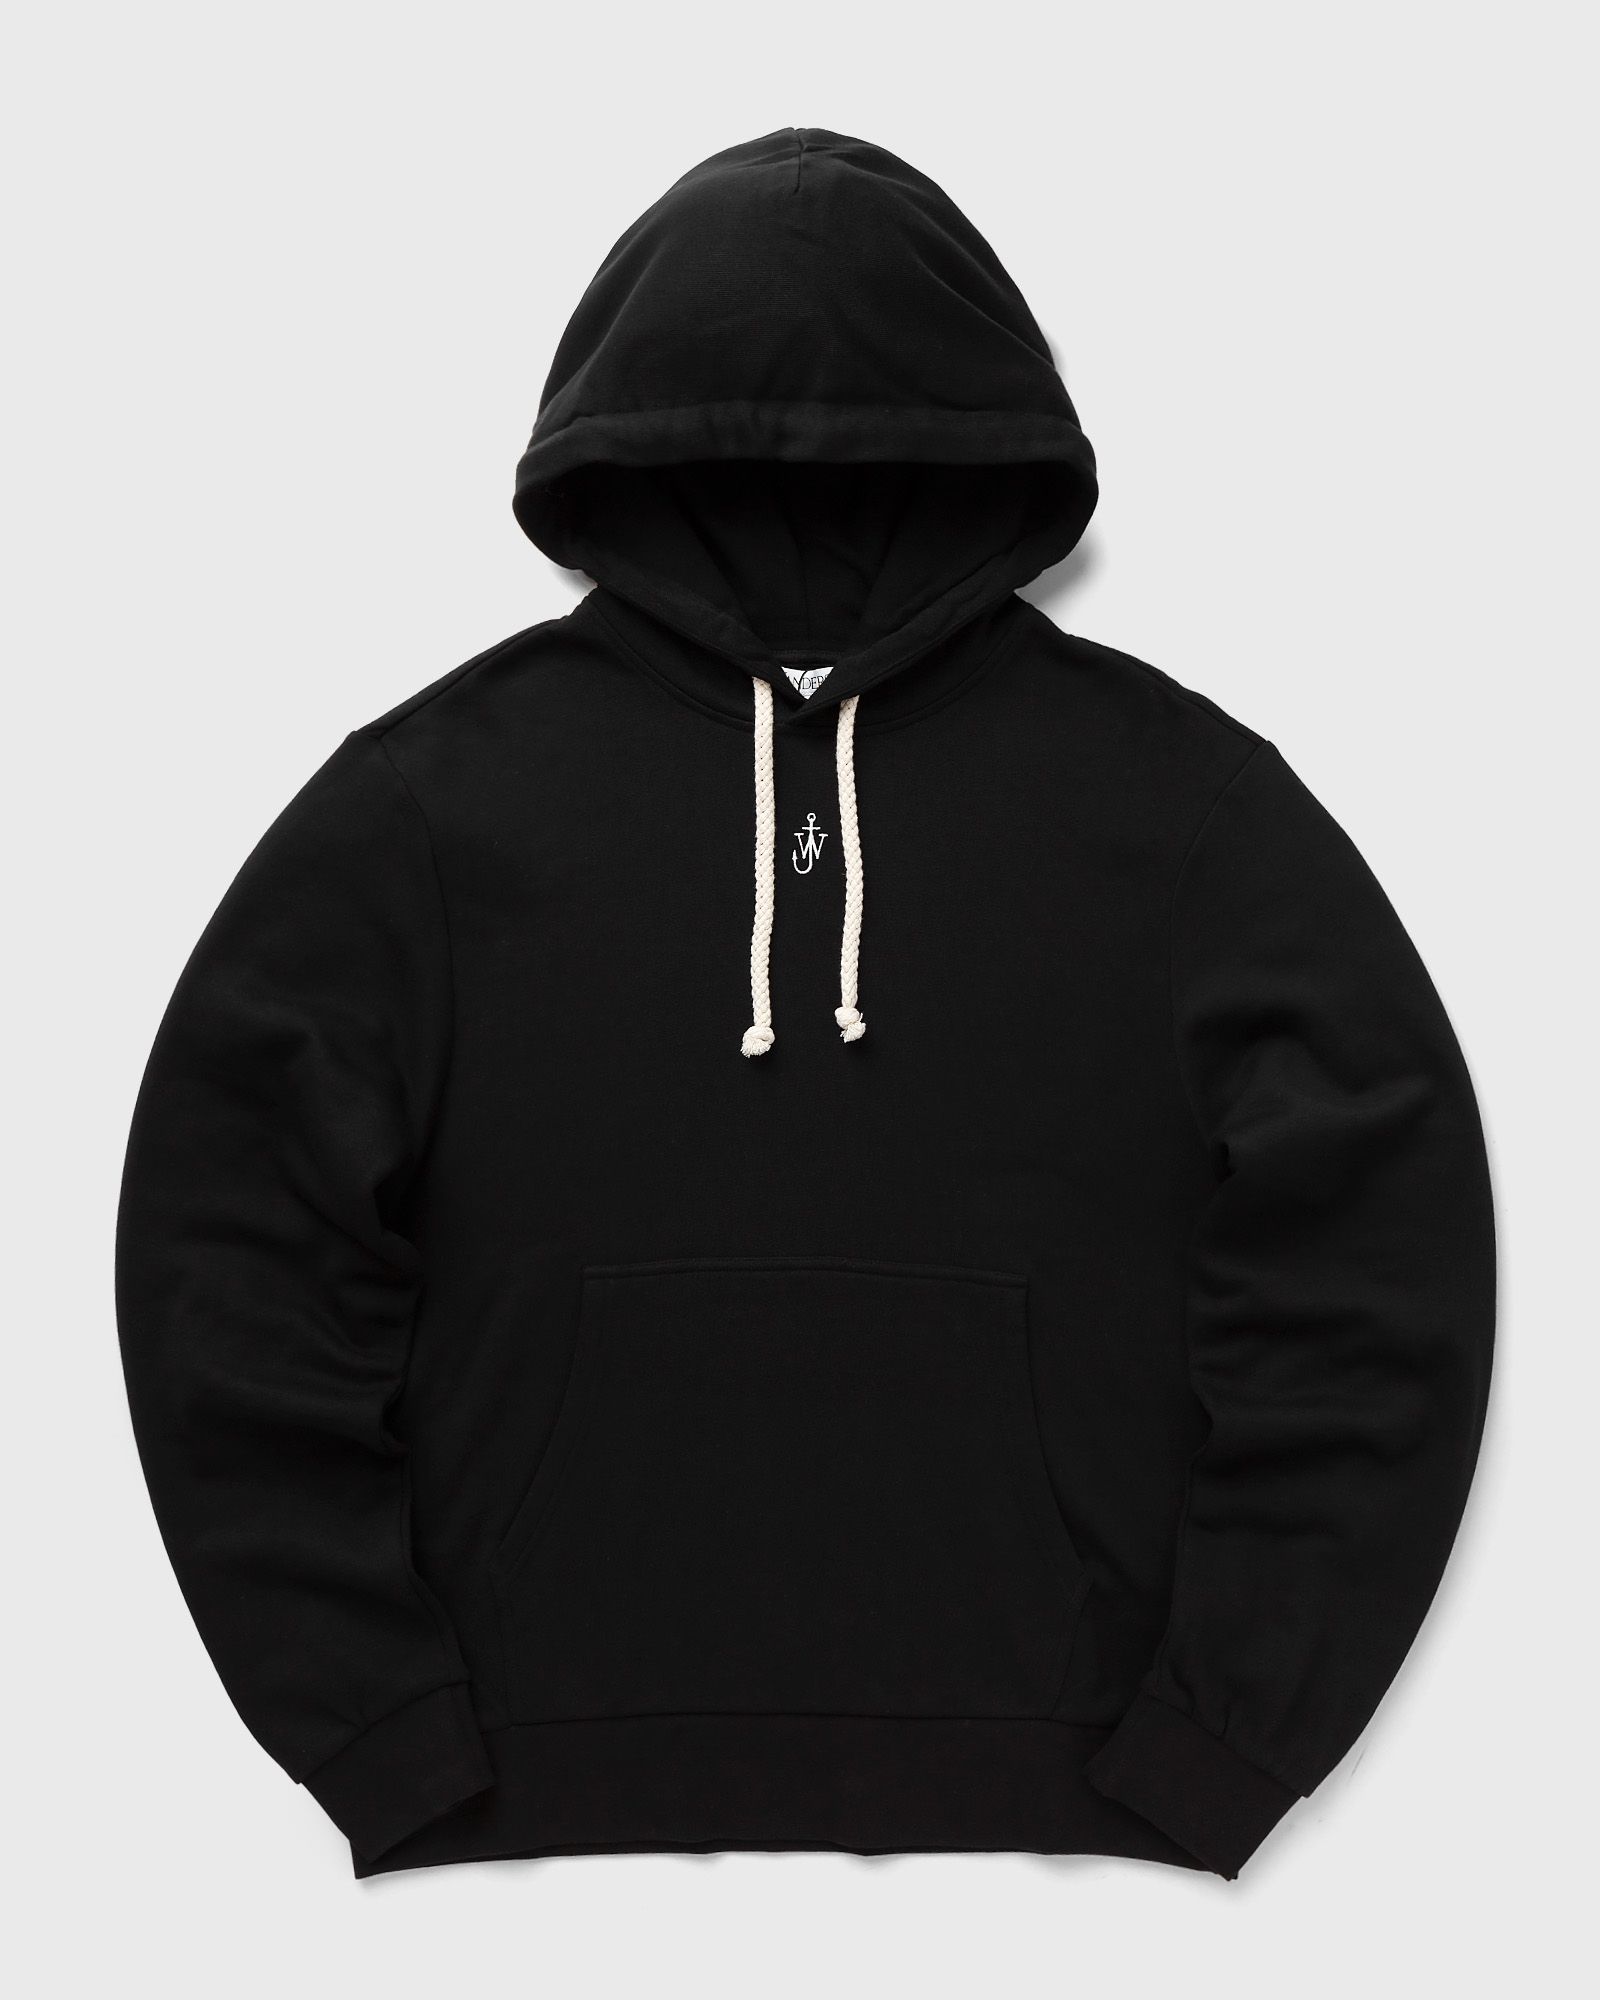 JW Anderson - anchor embroidery hoodie men hoodies black in größe:l